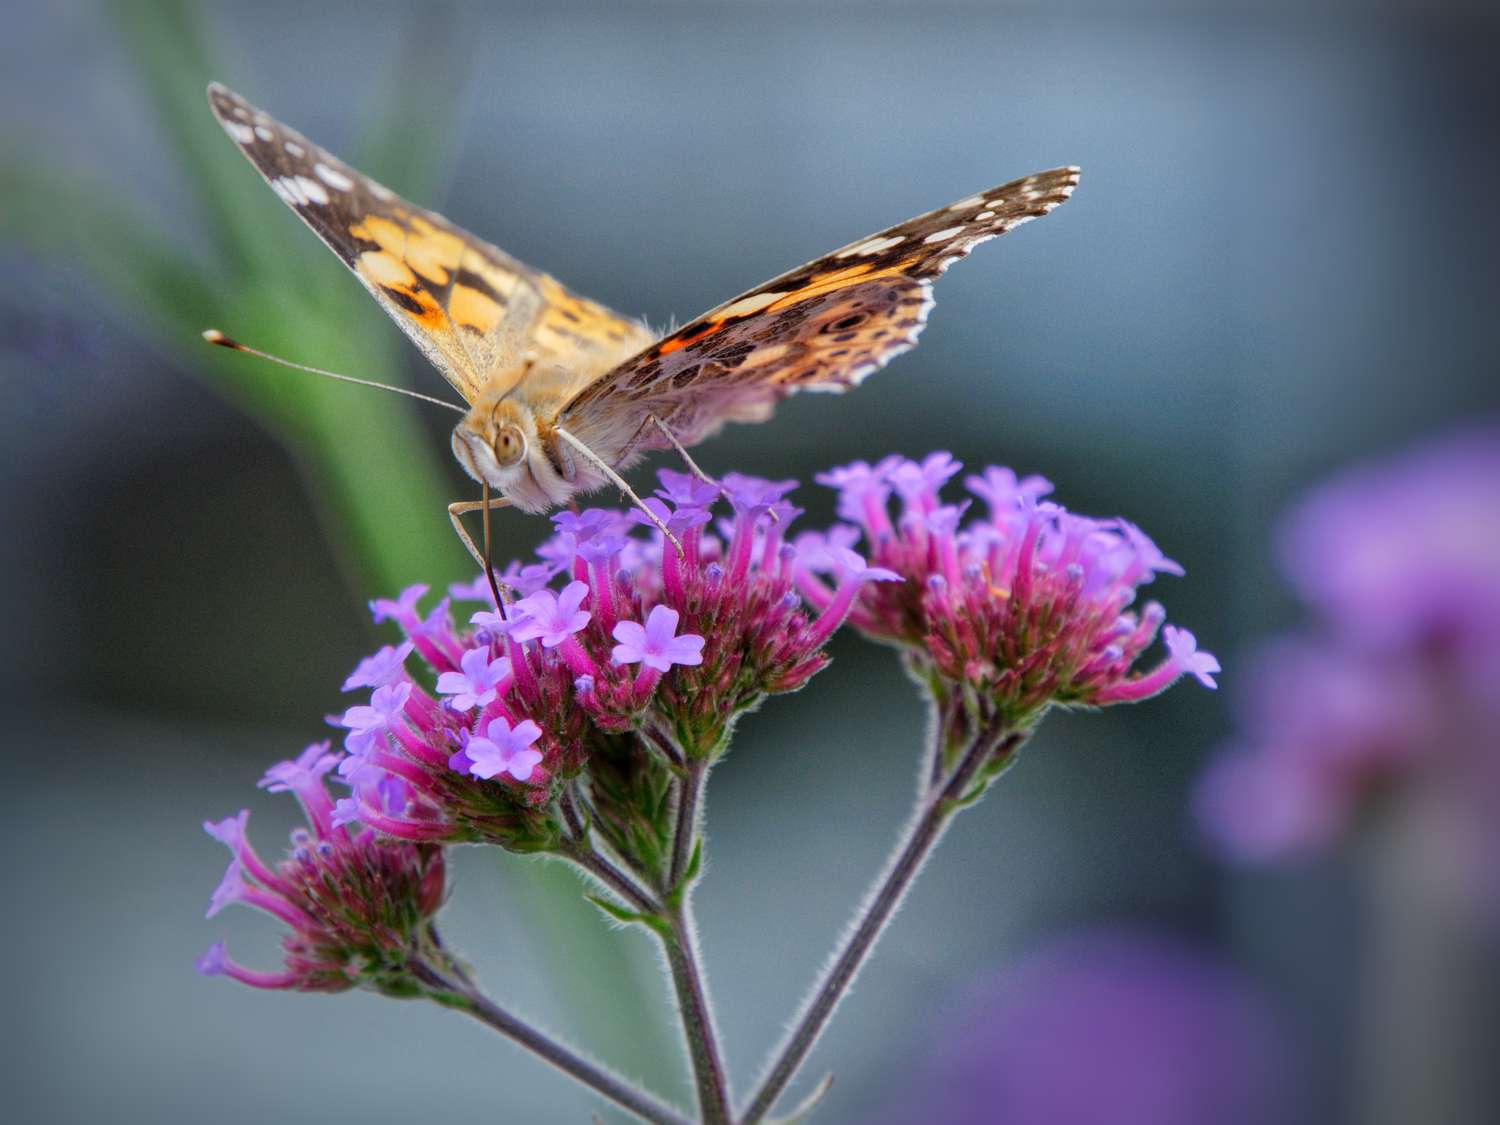 Nahaufnahme eines britischen Schmetterlings bei der Bestäubung einer lila Blüte